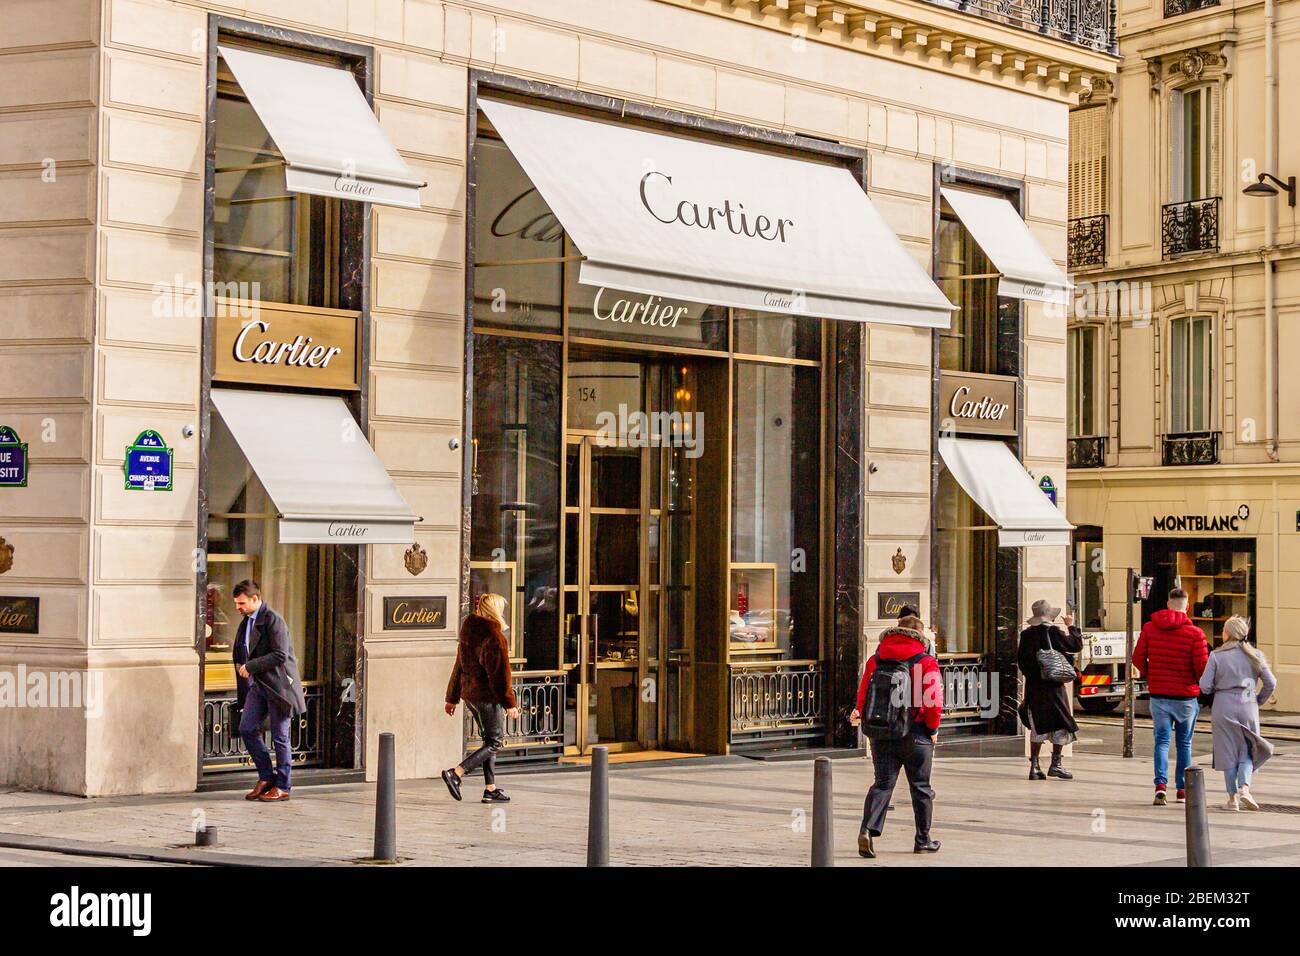 Tienda de artículos de lujo Cartier en los Campos Elíseos, París, Francia.  Febrero 2020 Fotografía de stock - Alamy